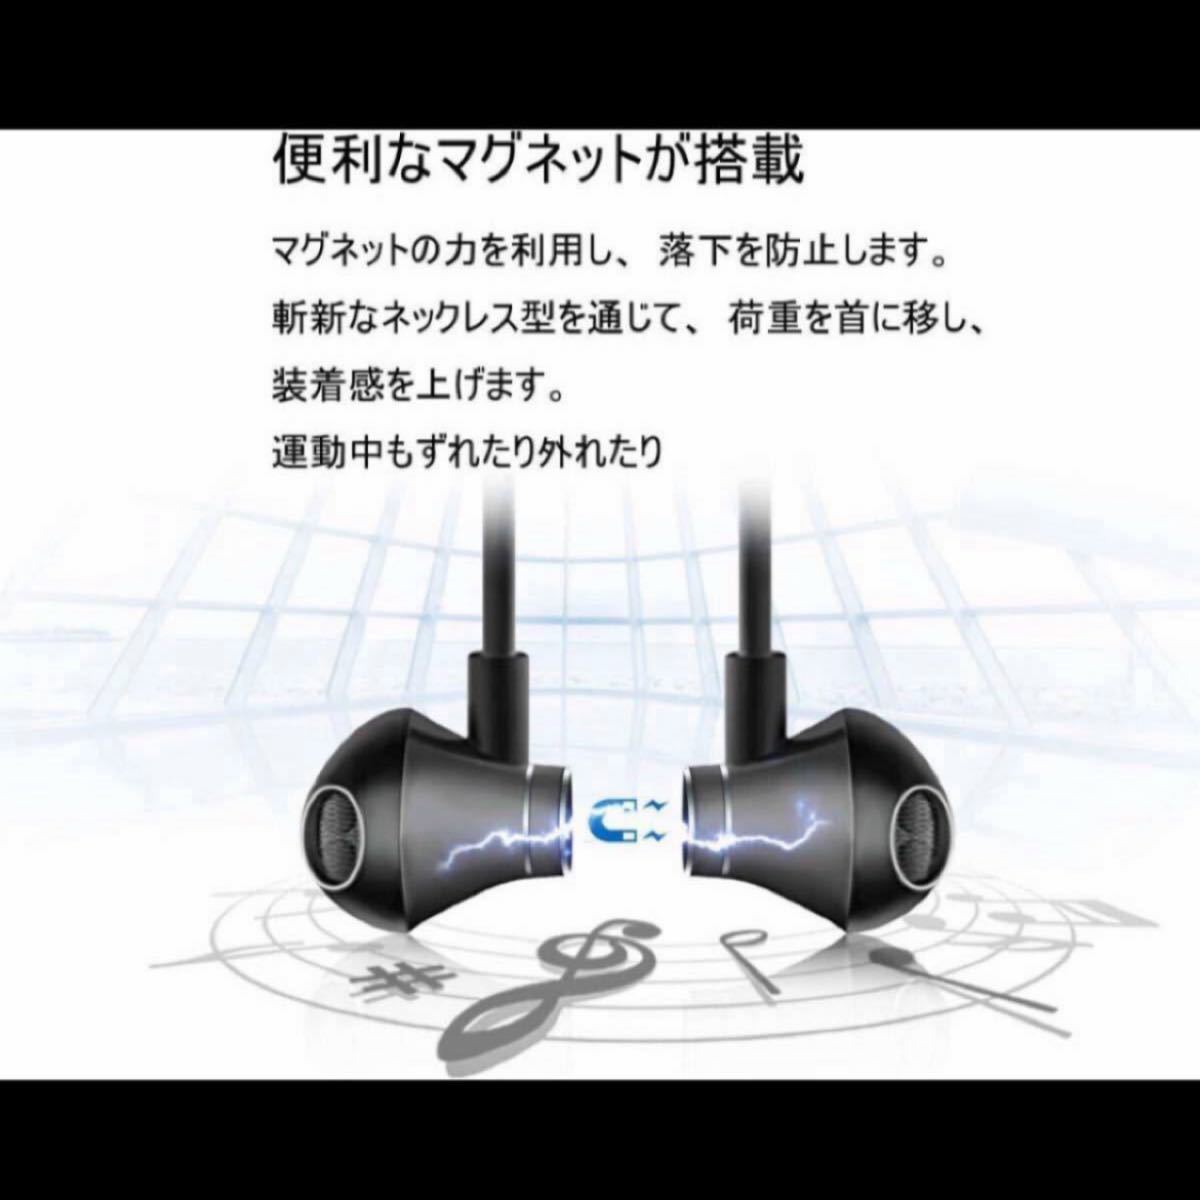 進化版 IPX5完全防水 Bluetooth イヤホン 低音重視 8.5時間連続再生 Hi-Fi 高音質 マグネット搭載 